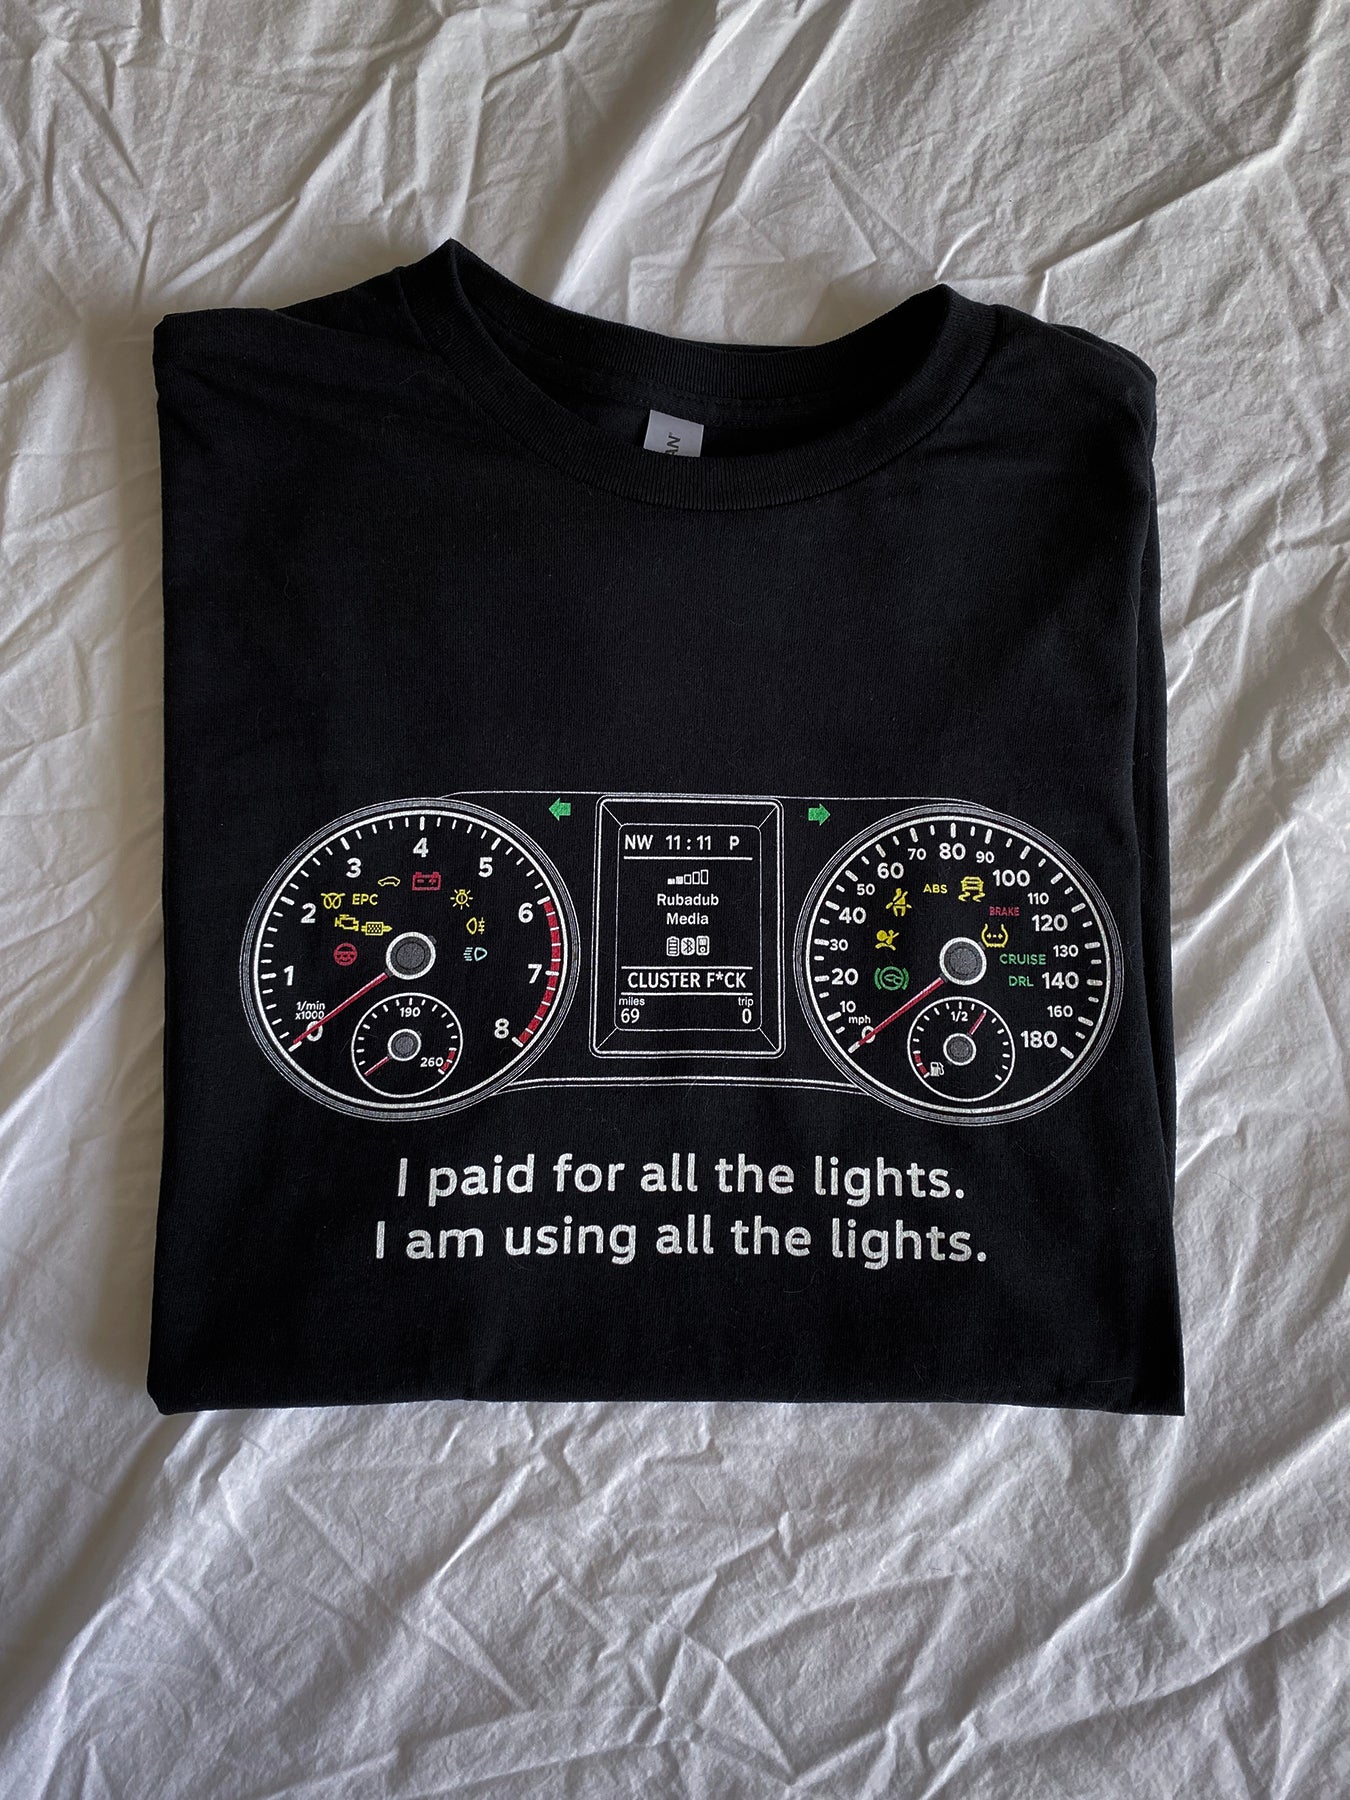 mk5 mk6 km7 gauge cluster lights shirt